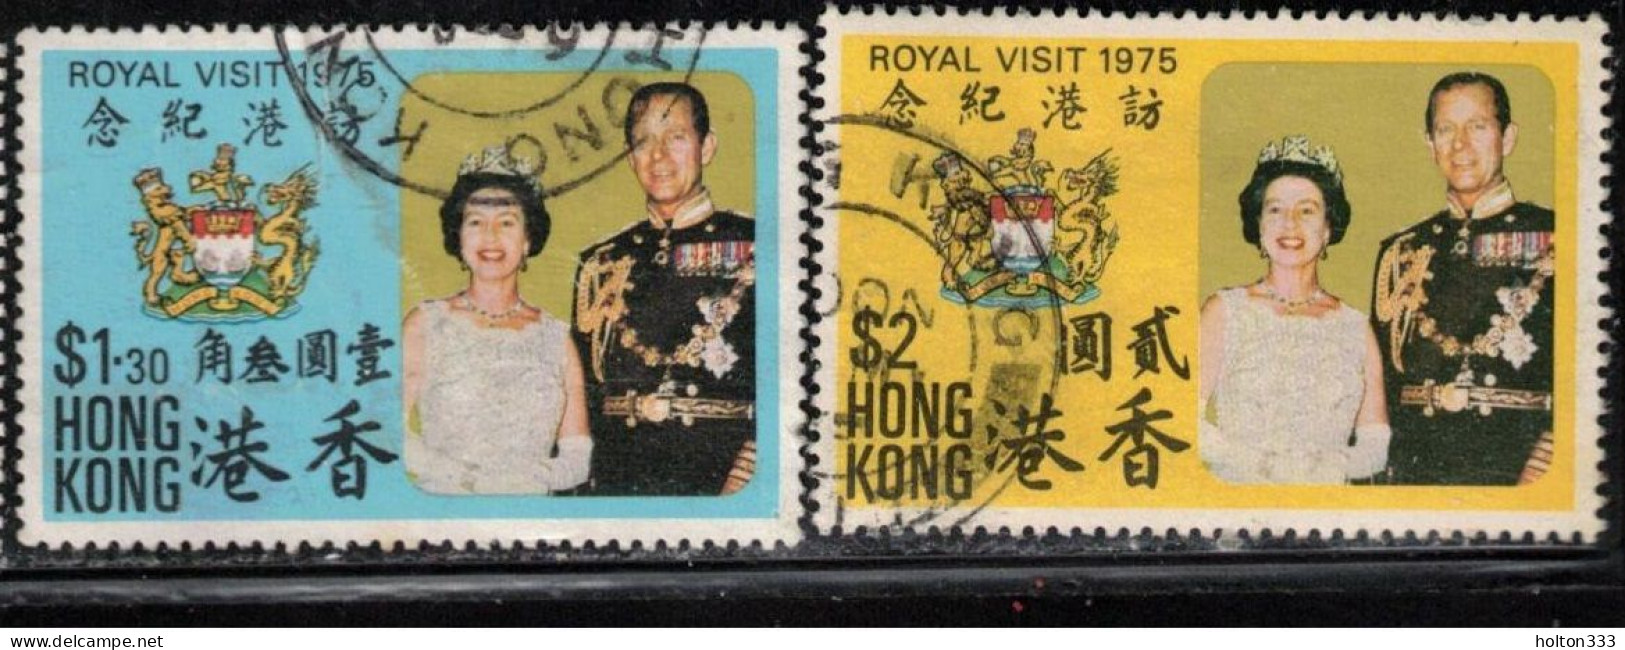 HONG KONG Scott # 304-5 Used - Royal Visit 1975 - Gebraucht